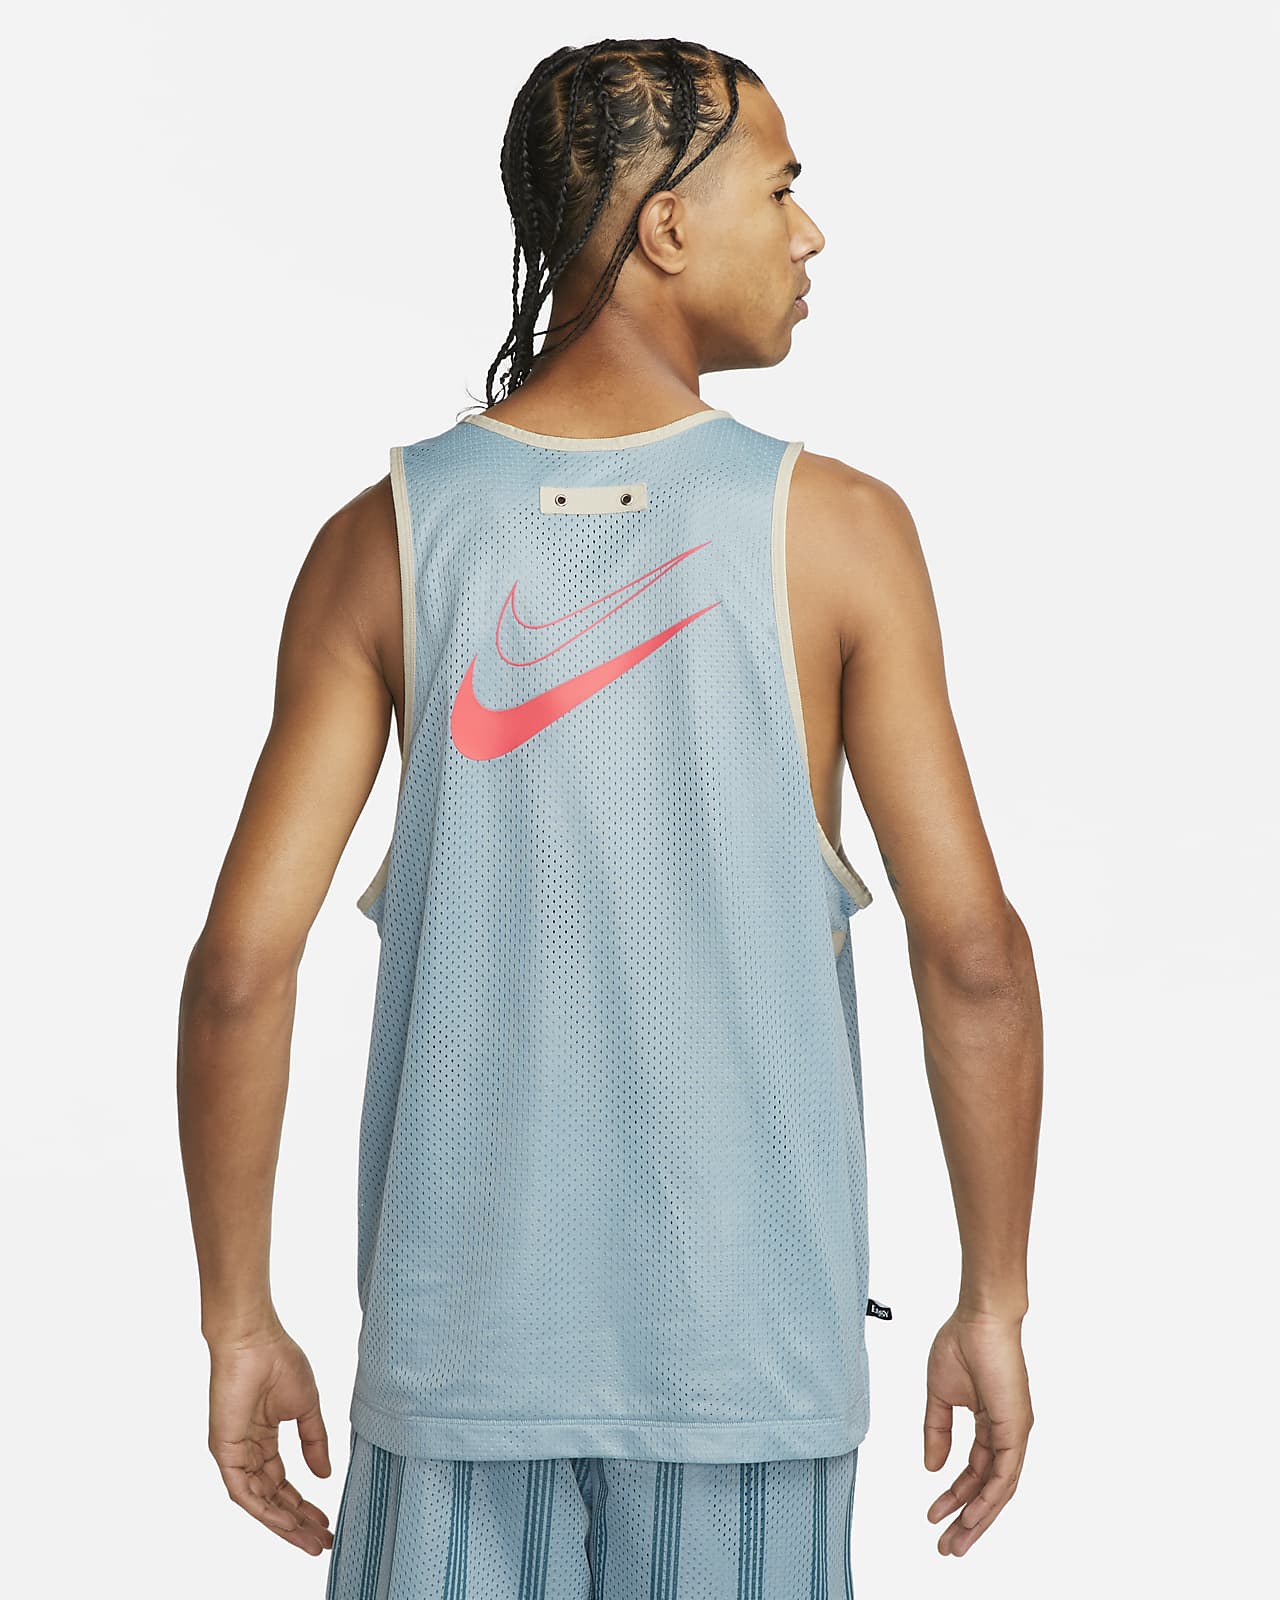 Jersey de básquetbol de malla Nike Dri-FIT para hombre Kevin Durant. Nike .com